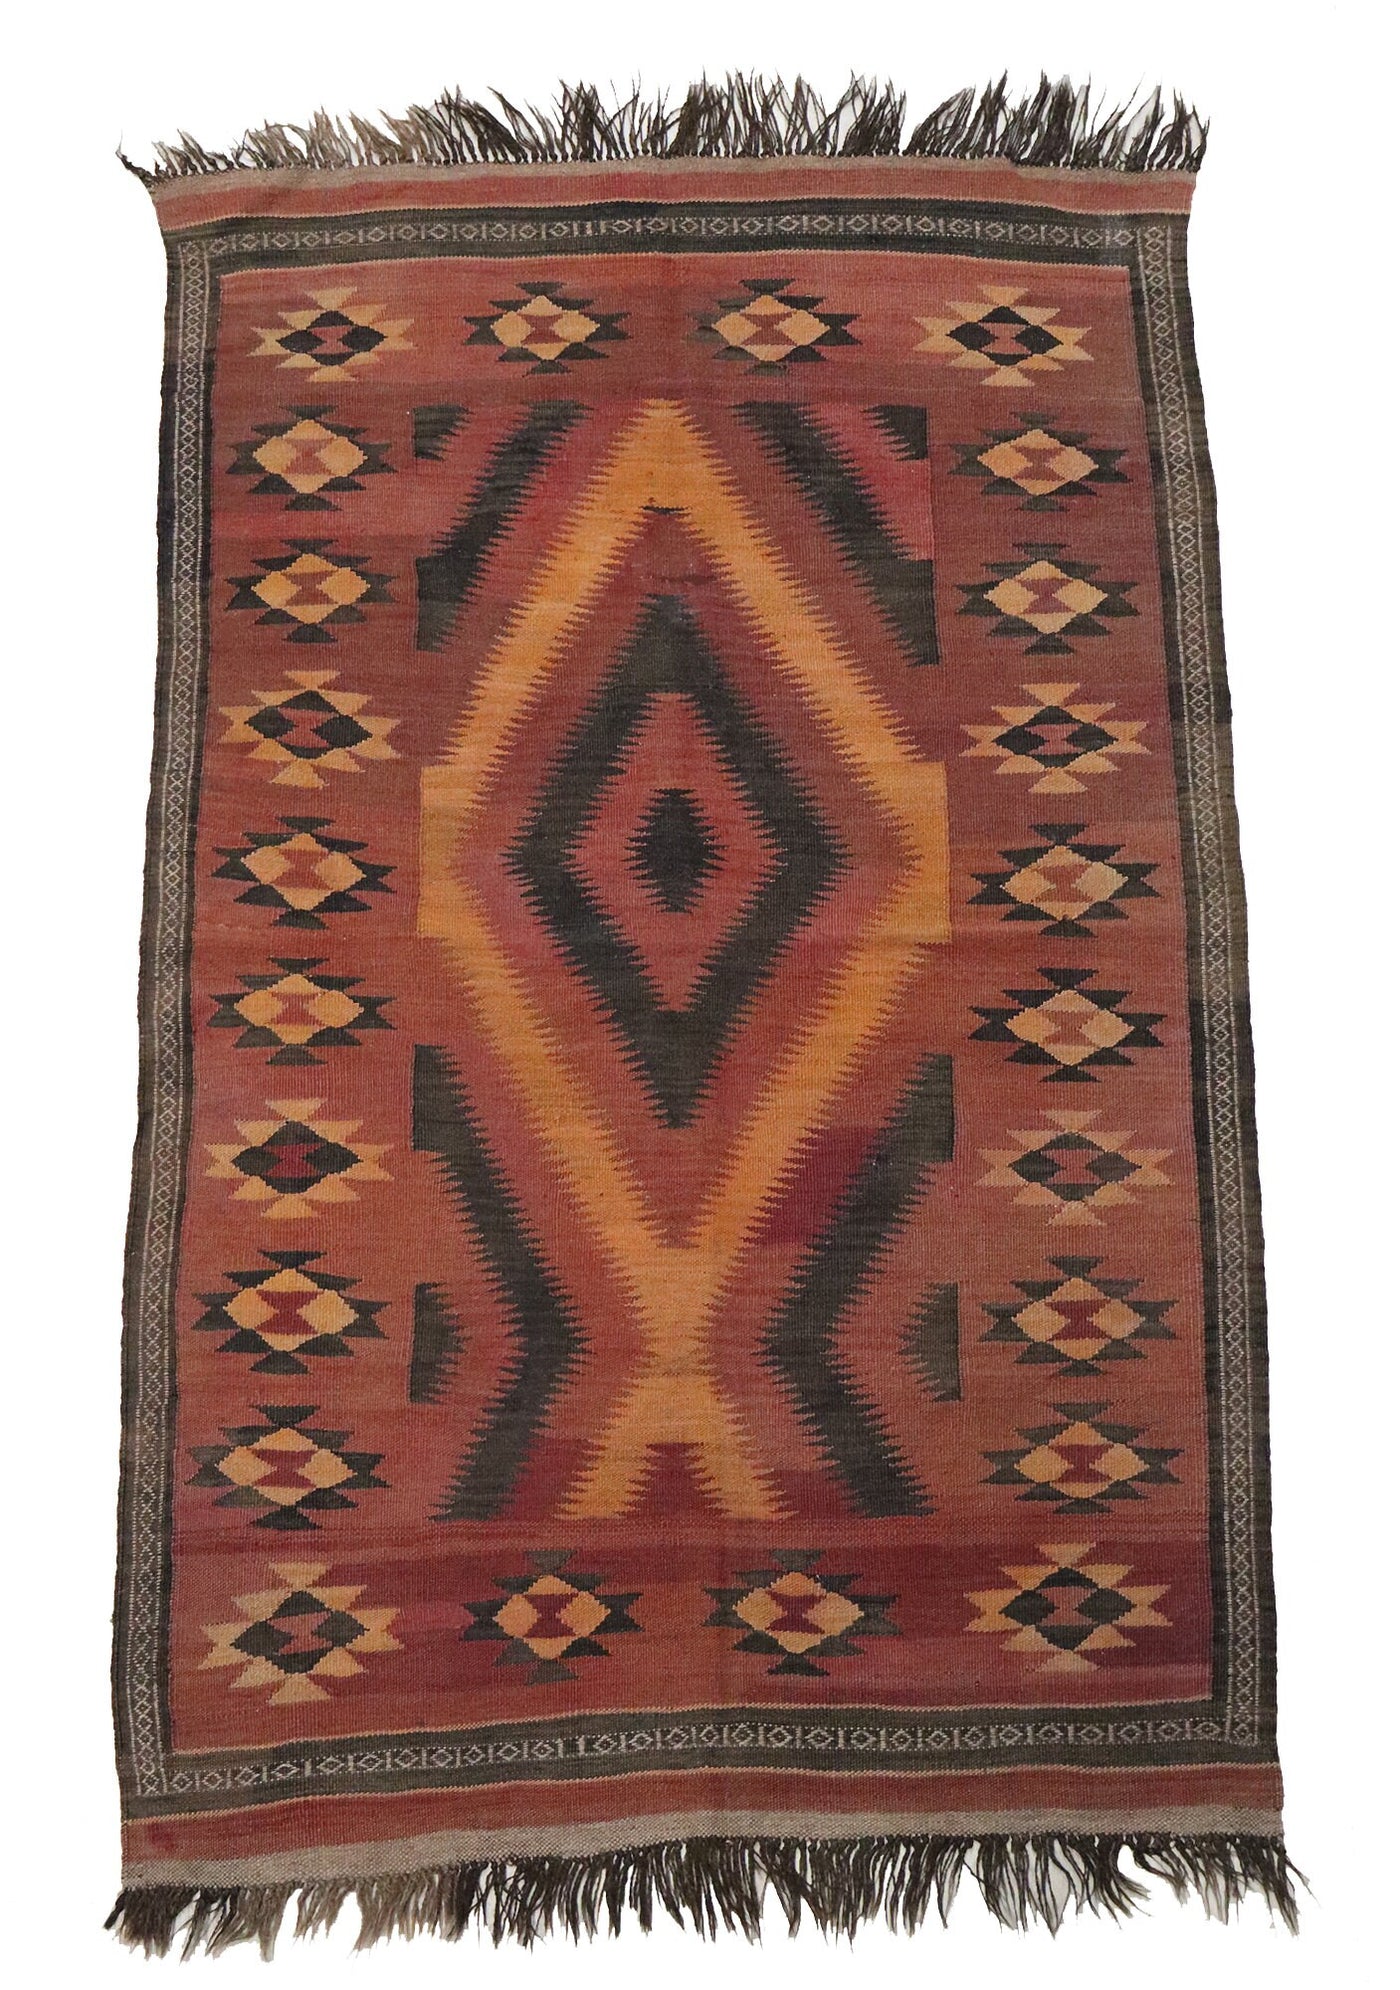 185x115 cm vintage orient handgewebte Teppich Afghan Uzbek Nomaden Planzenfarbe sari pul kelim kilim No:9 Teppiche Orientsbazar   